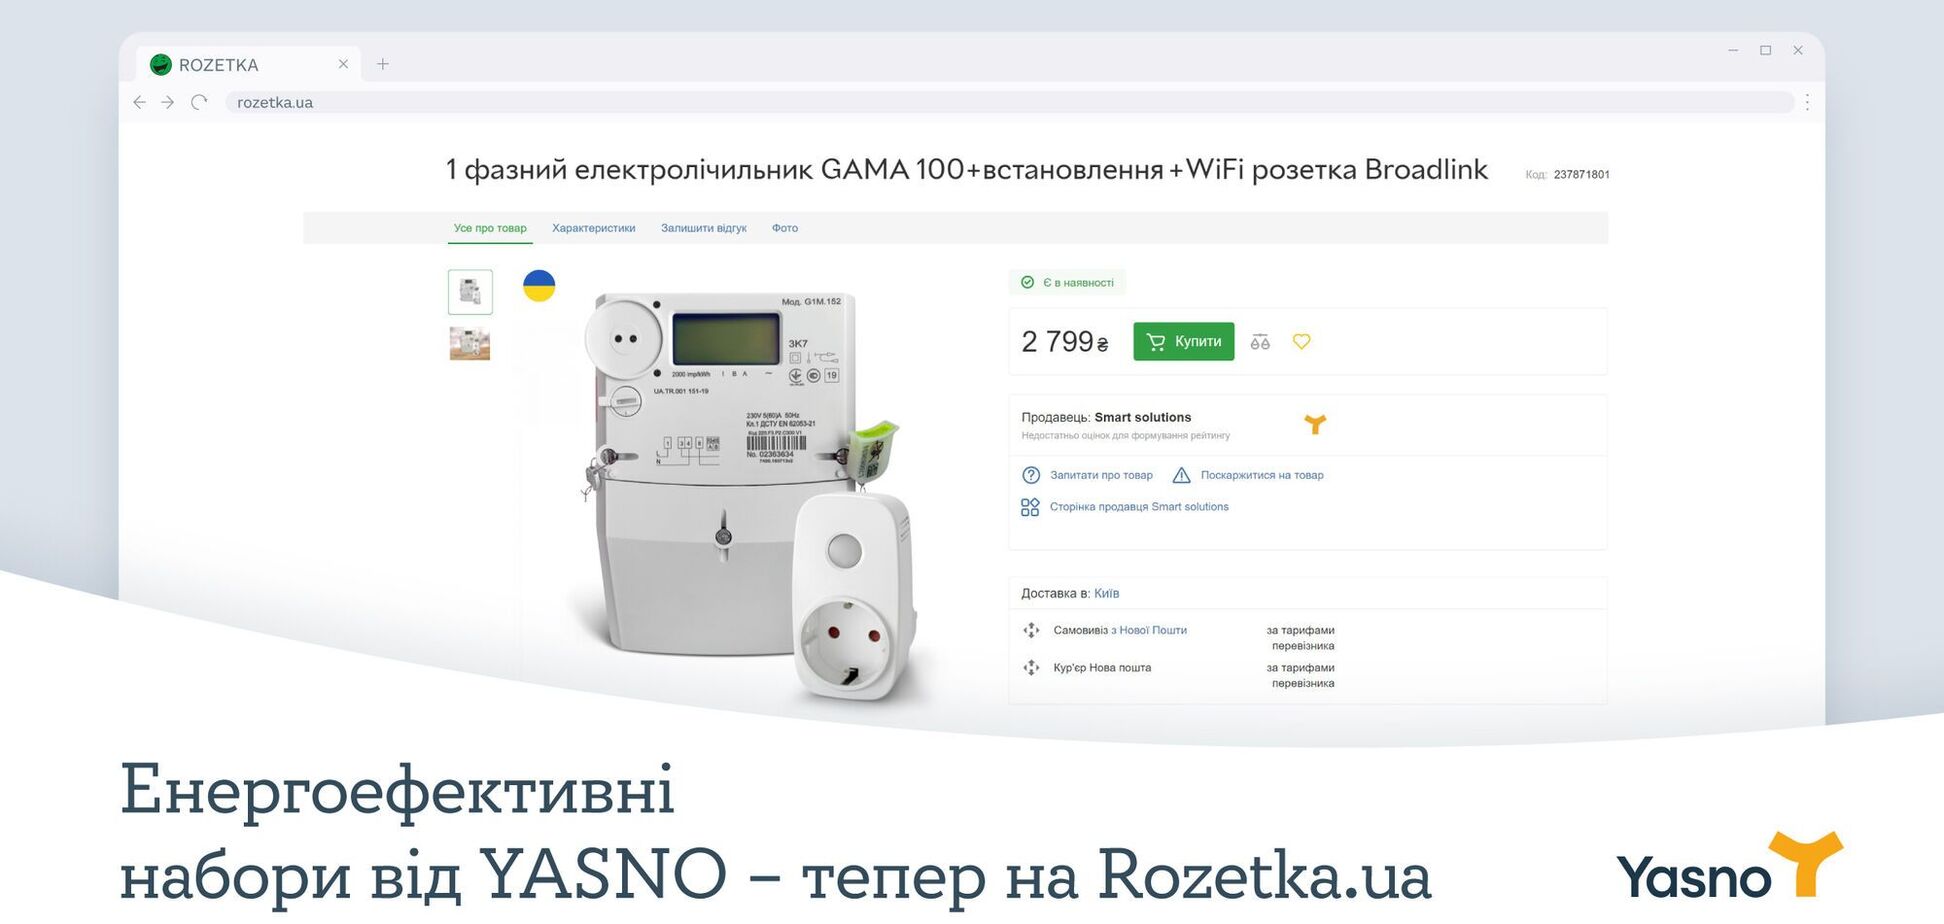 Енергоефективні набори від Yasno з'явилися в інтернет-магазині Rozetka